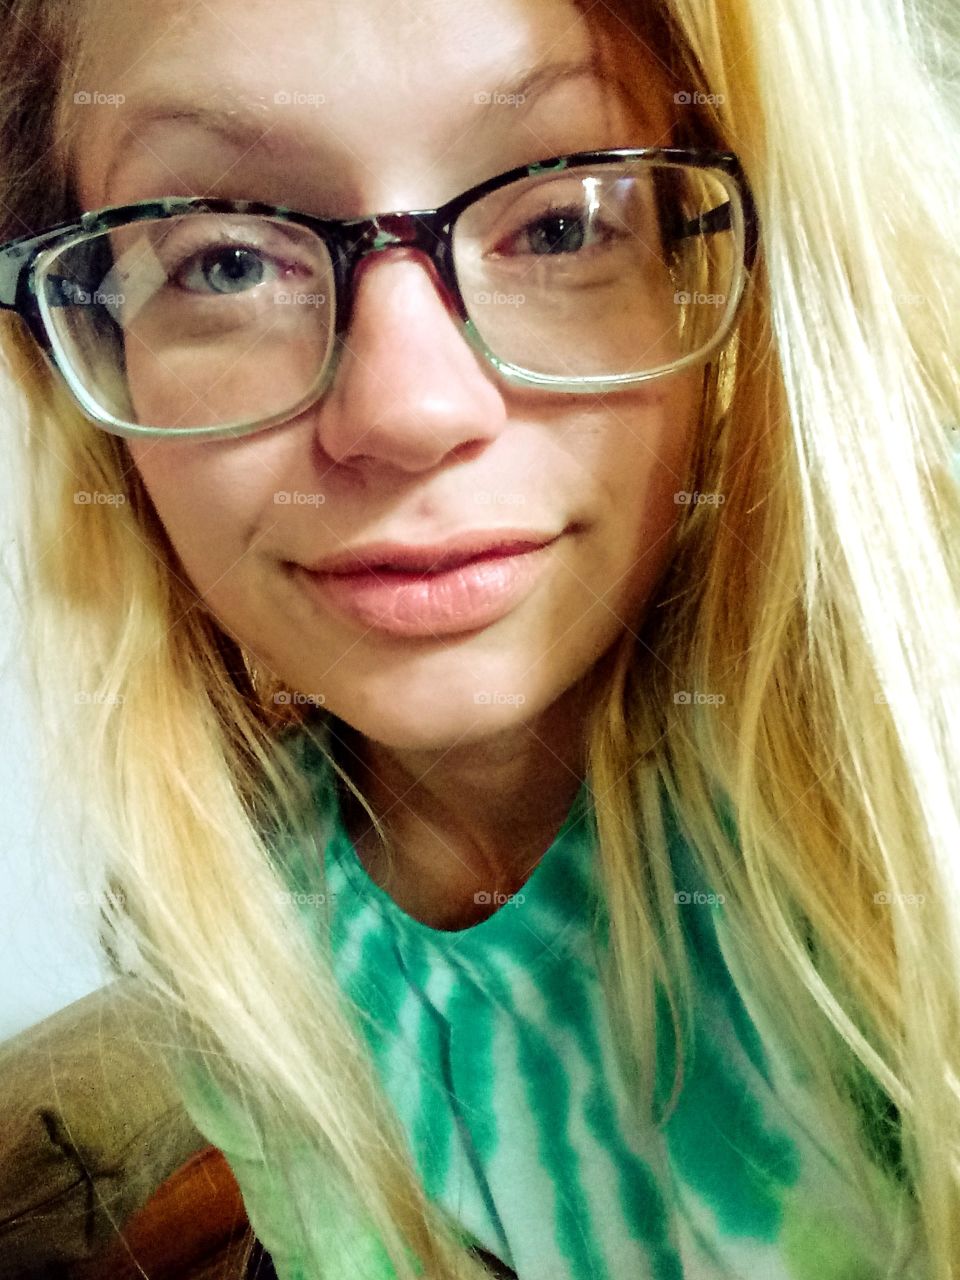 hippie girl wearing glasses and a tye die tee shirt